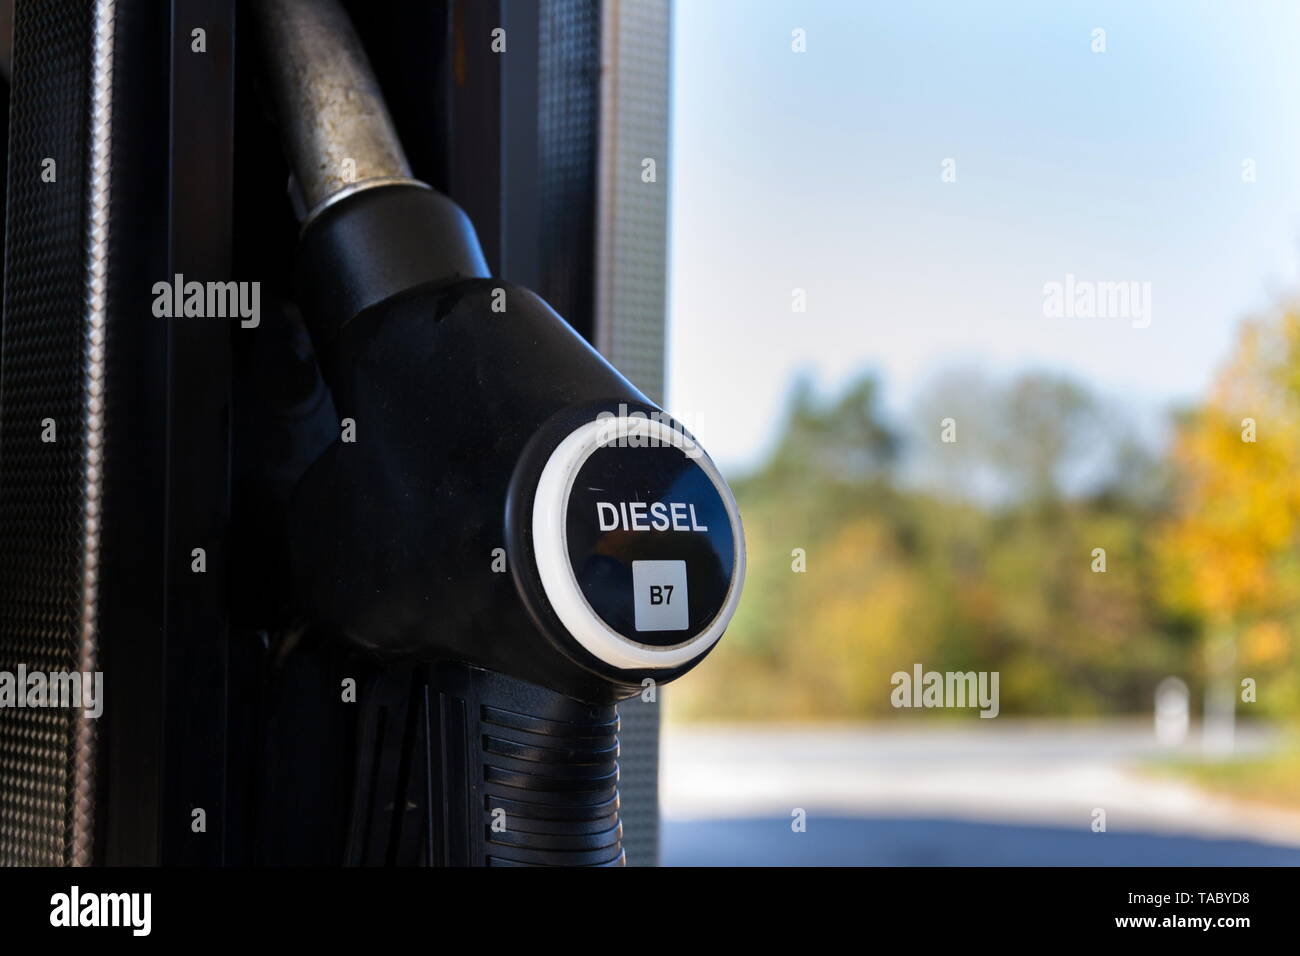 Nuevo Etiquetado de combustible en una gasolinera de bombas con las nuevas etiquetas de la UE, día soleado Foto de stock